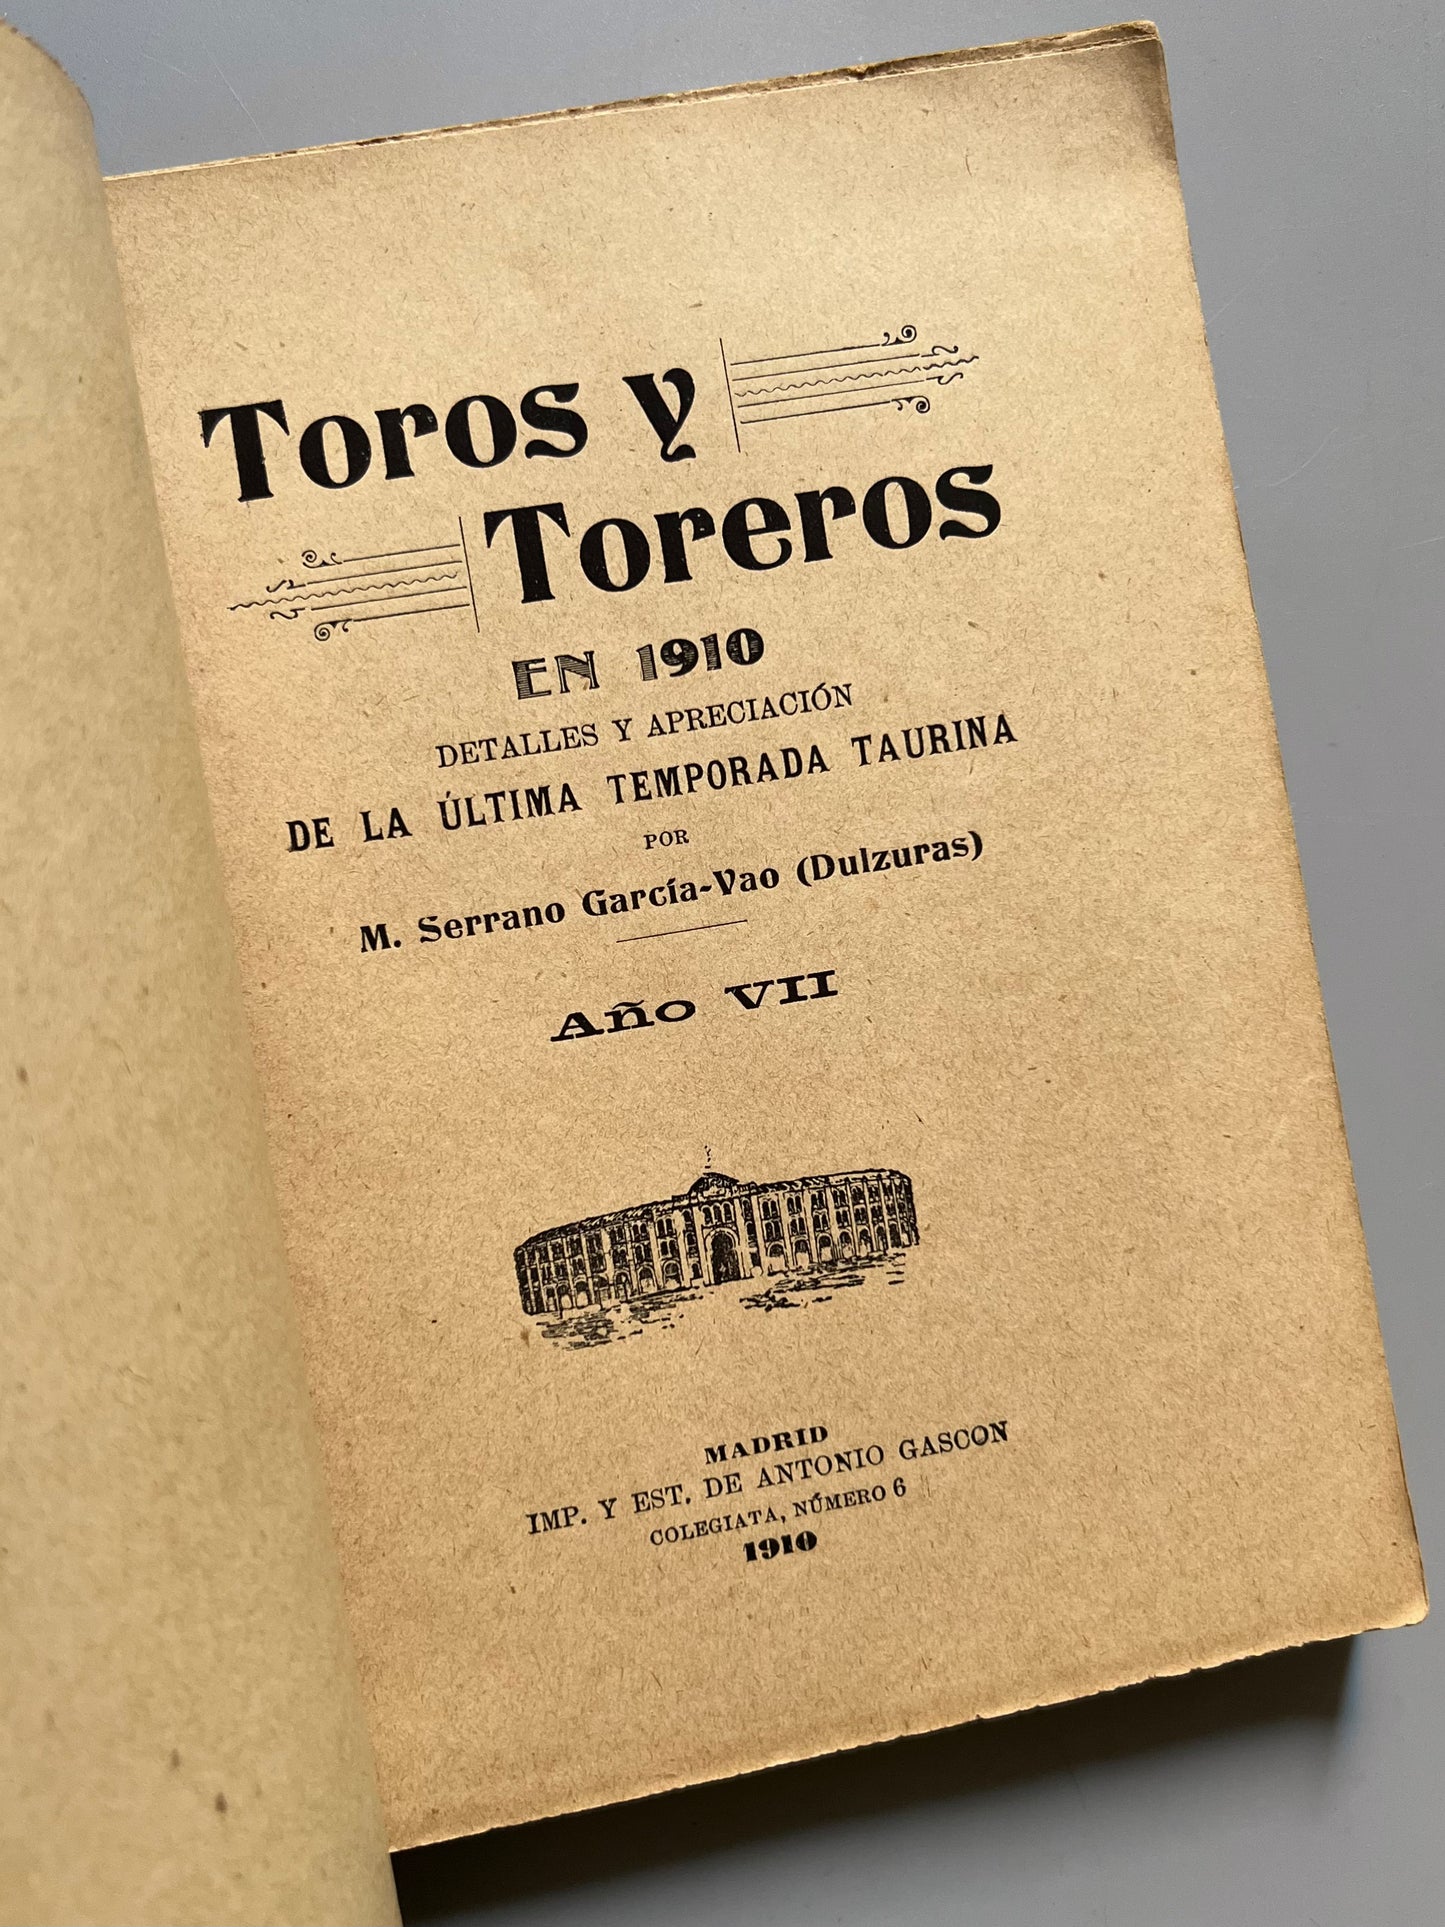 Toros y toreros en 1910, M. Serrano García-Vao - Imp. y Est. de Antonio Gascón, 1910